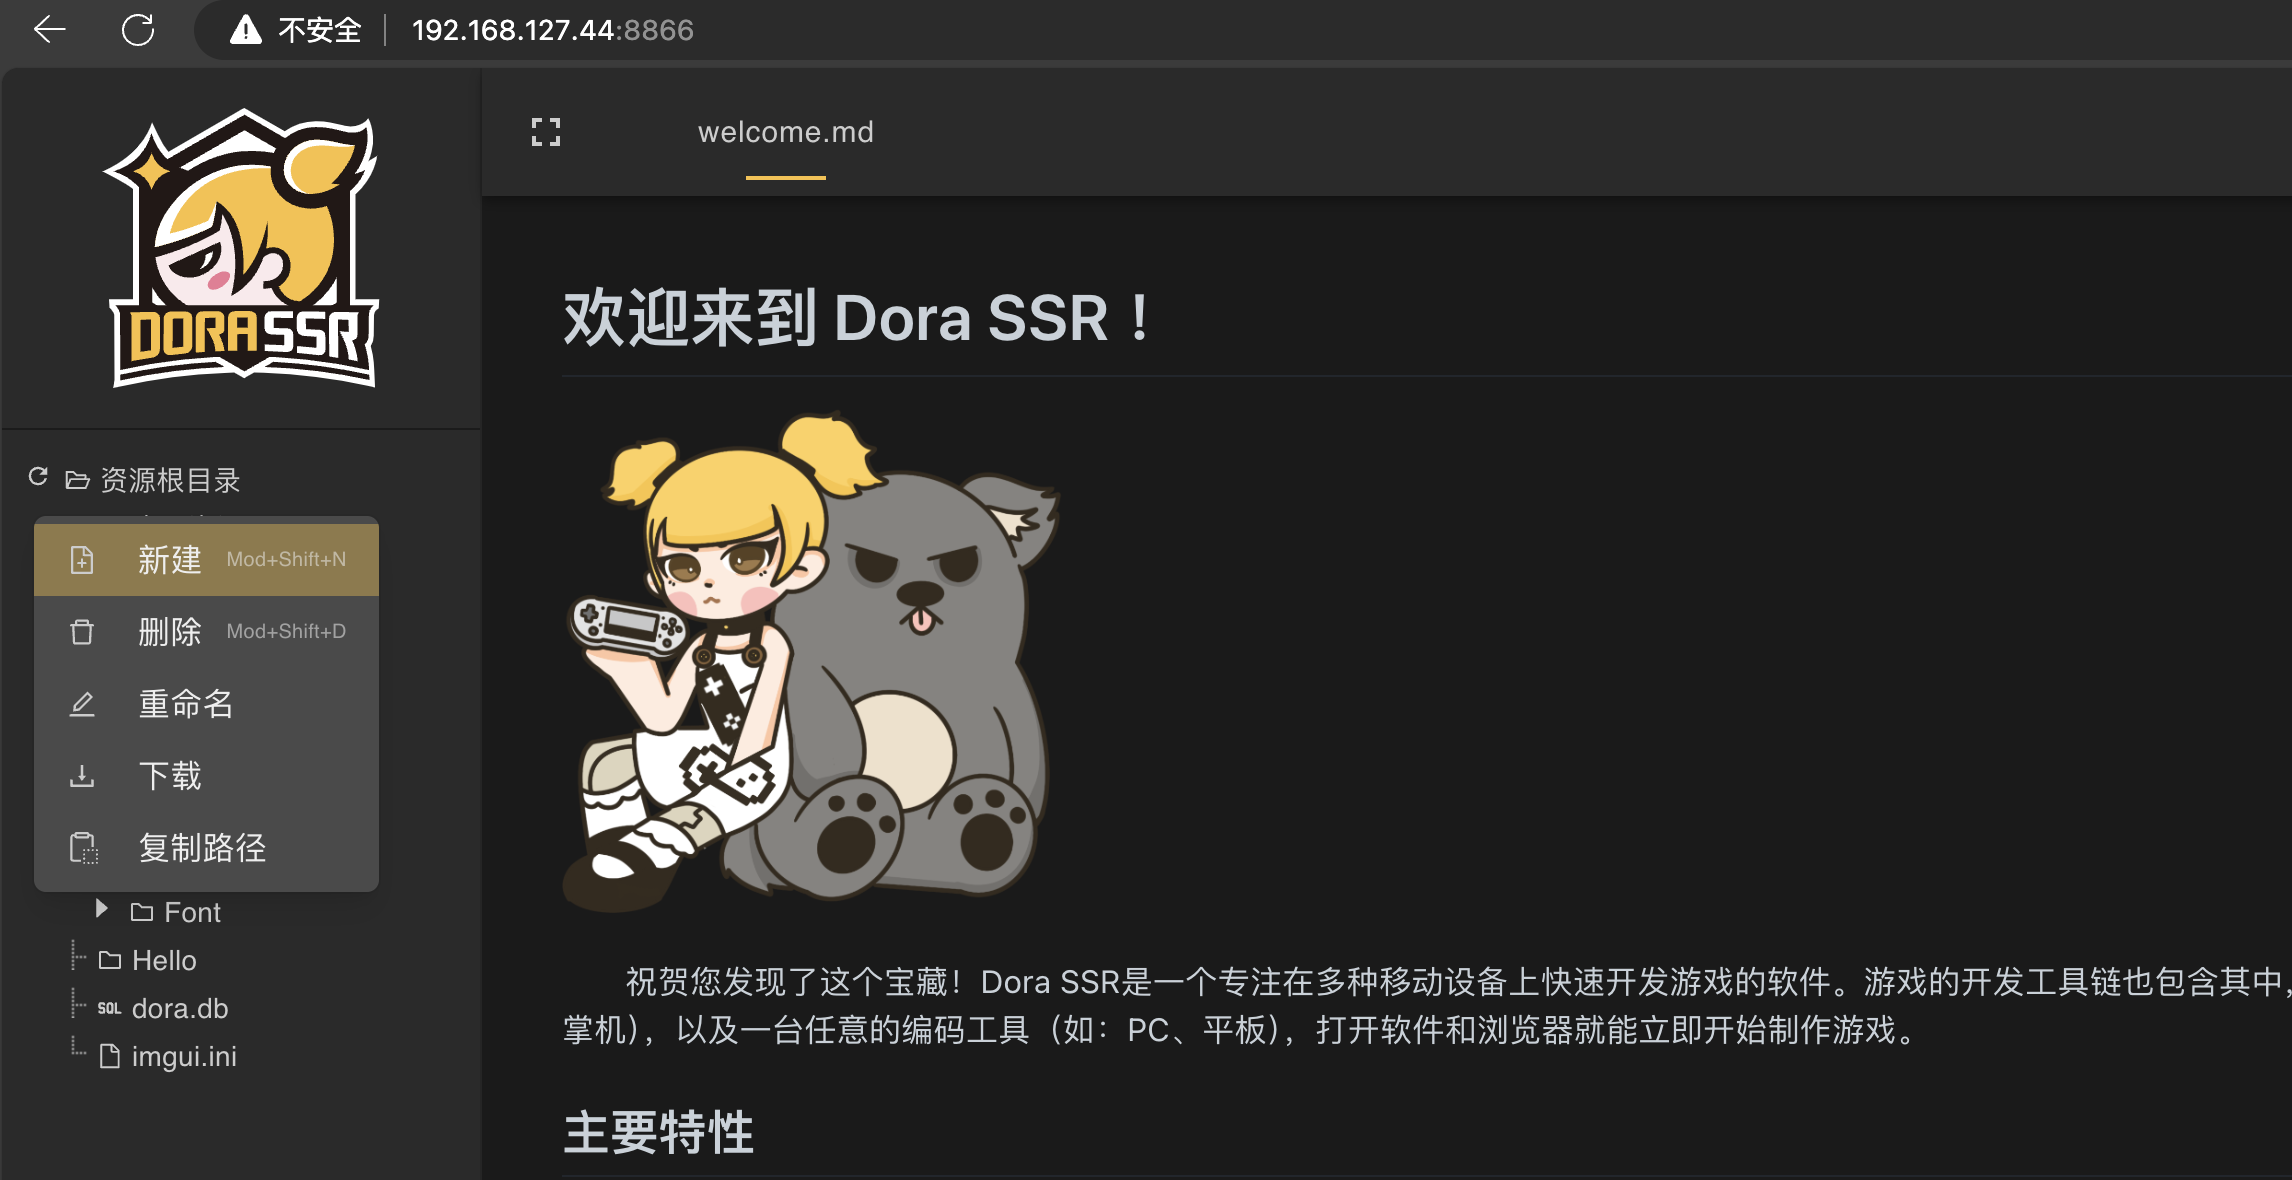 ブラウザでDora SSRのWeb IDEにアクセスし、新しいフォルダーを作成します。